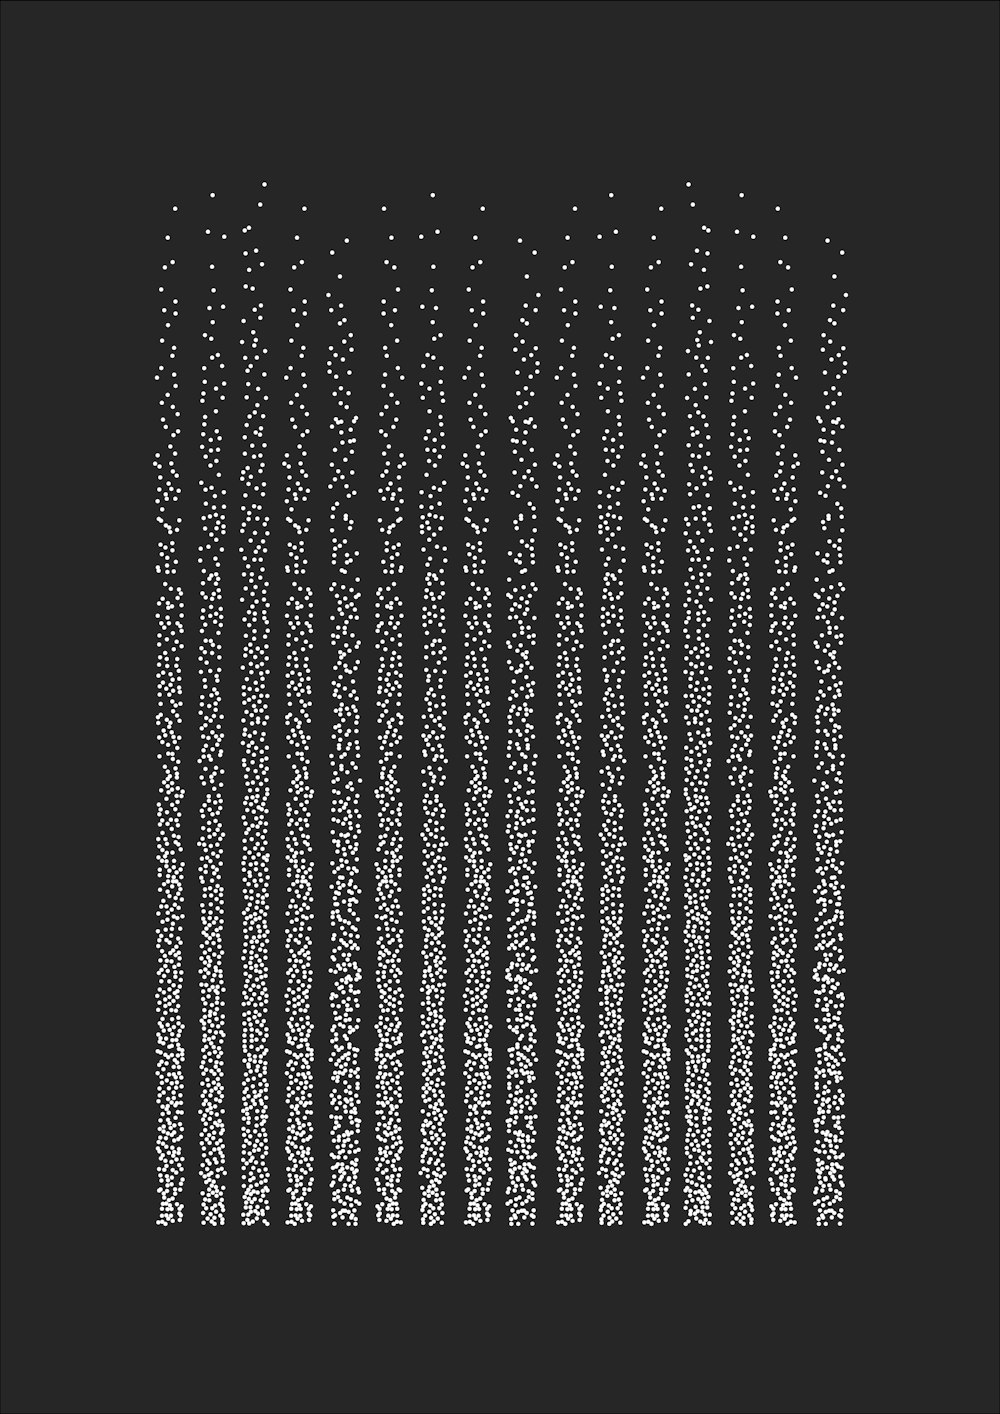 Una foto en blanco y negro de una serie de puntos